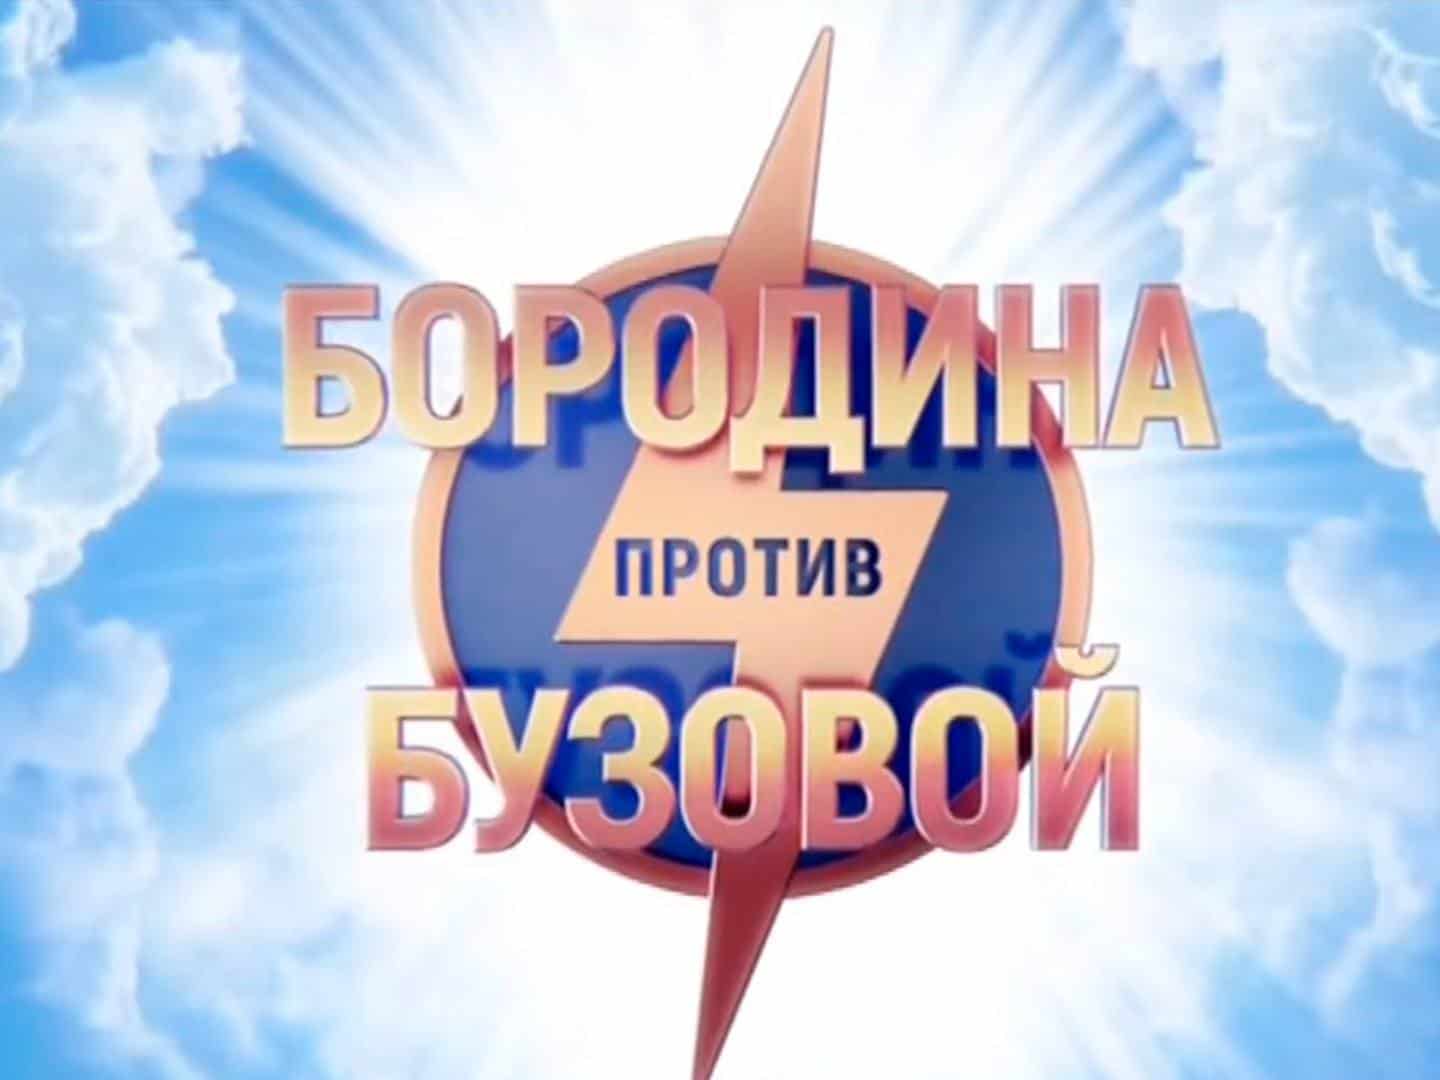 Бородина-против-Бузовой-260-серия